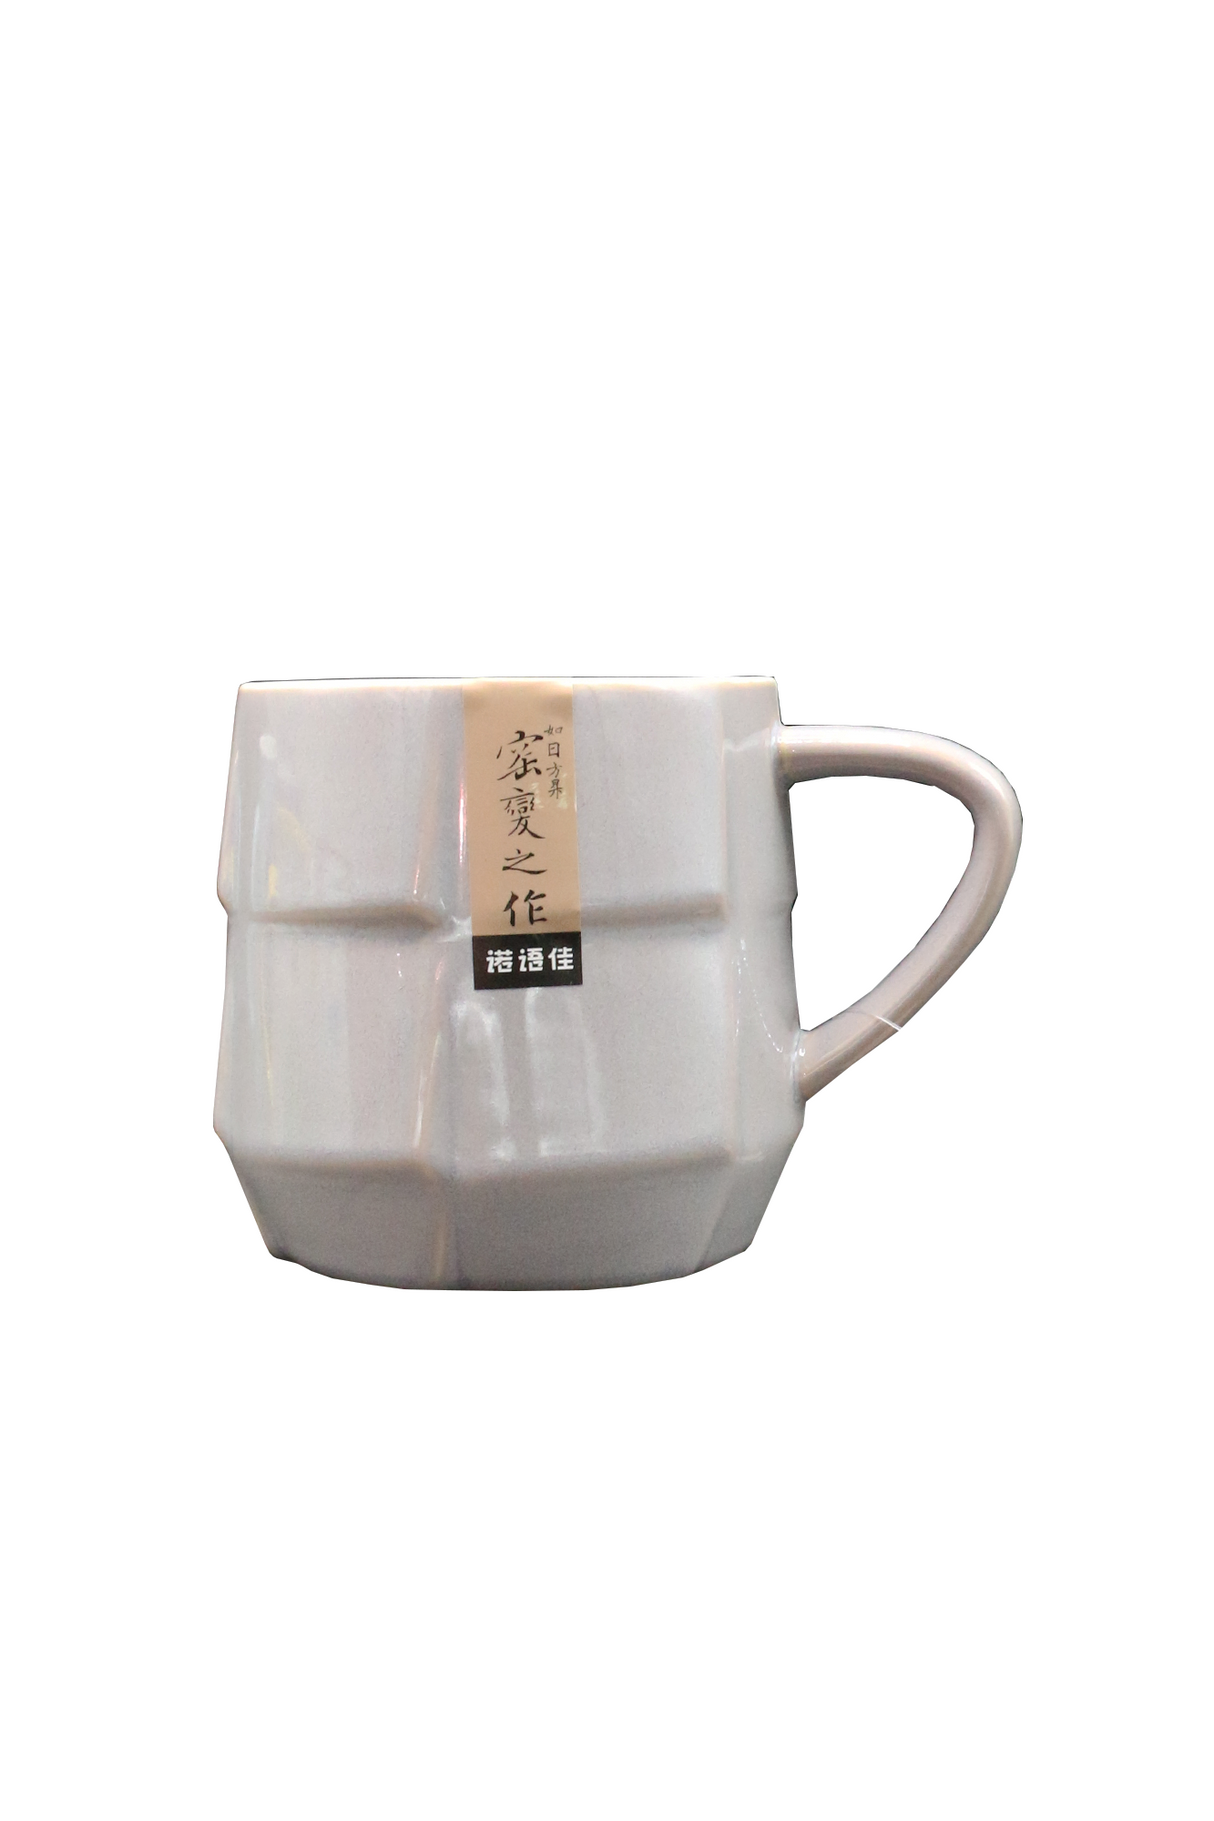 mug ceramic cx-04 china